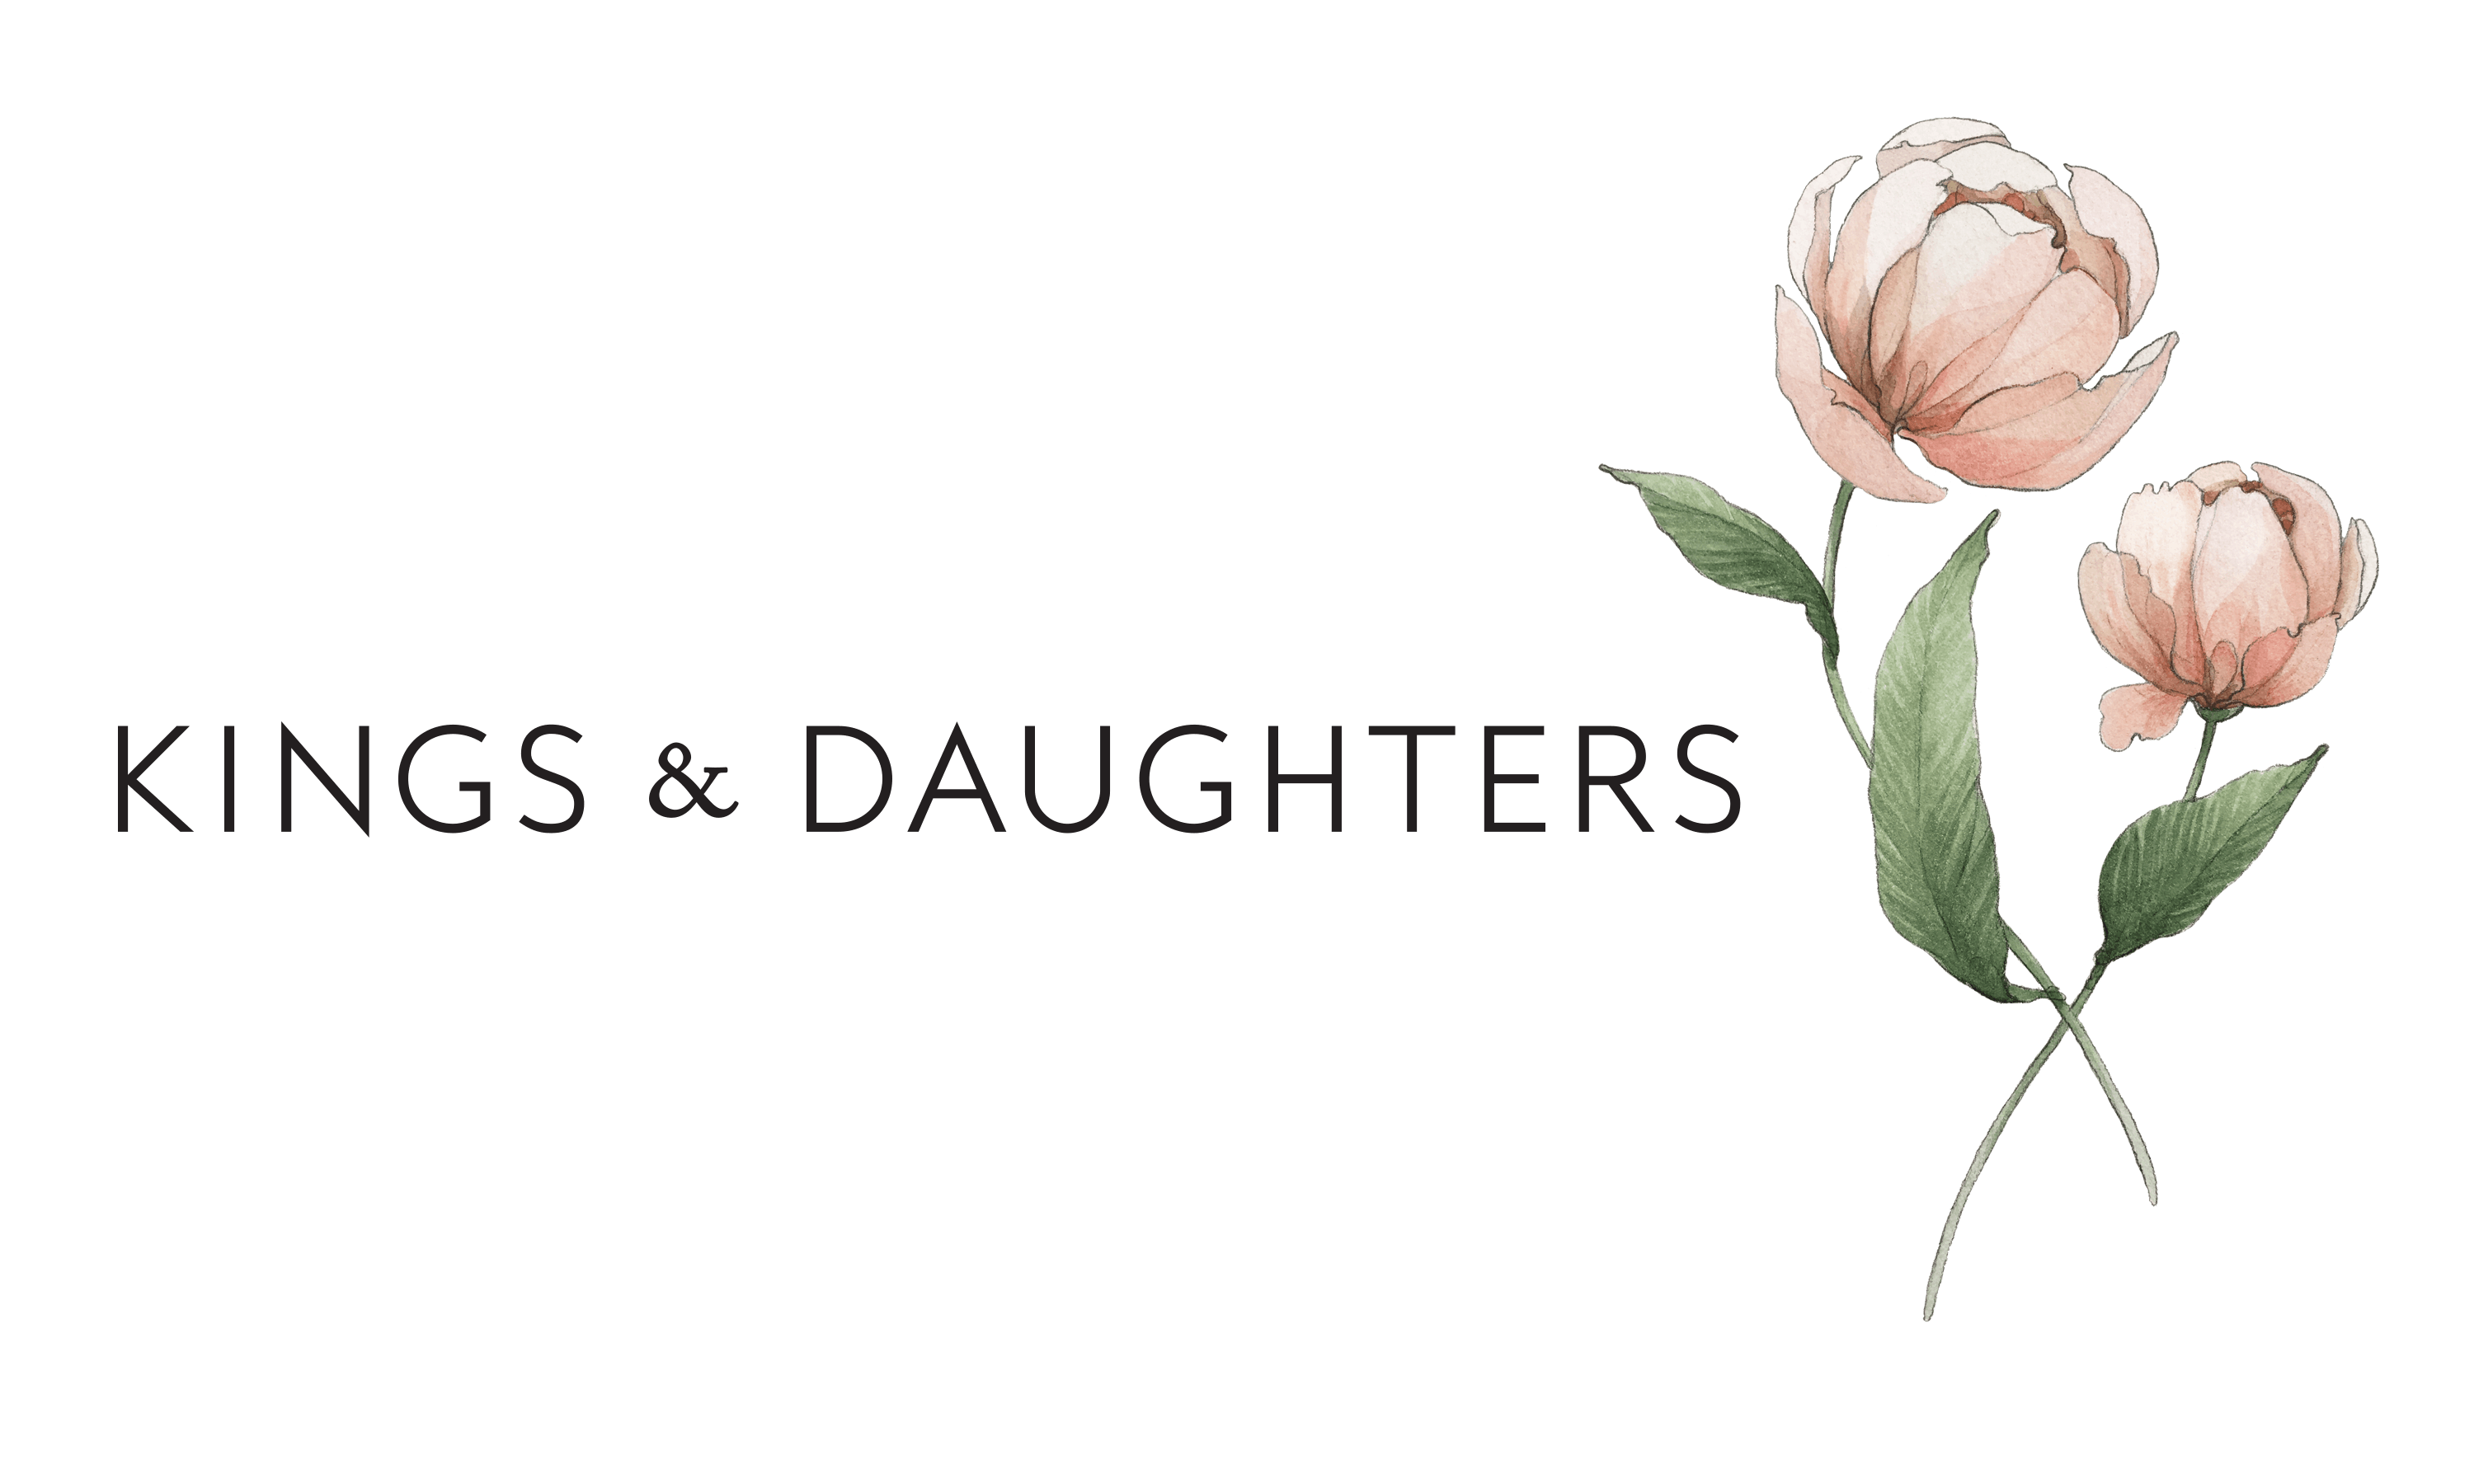 Kings & Daughters Online Shop